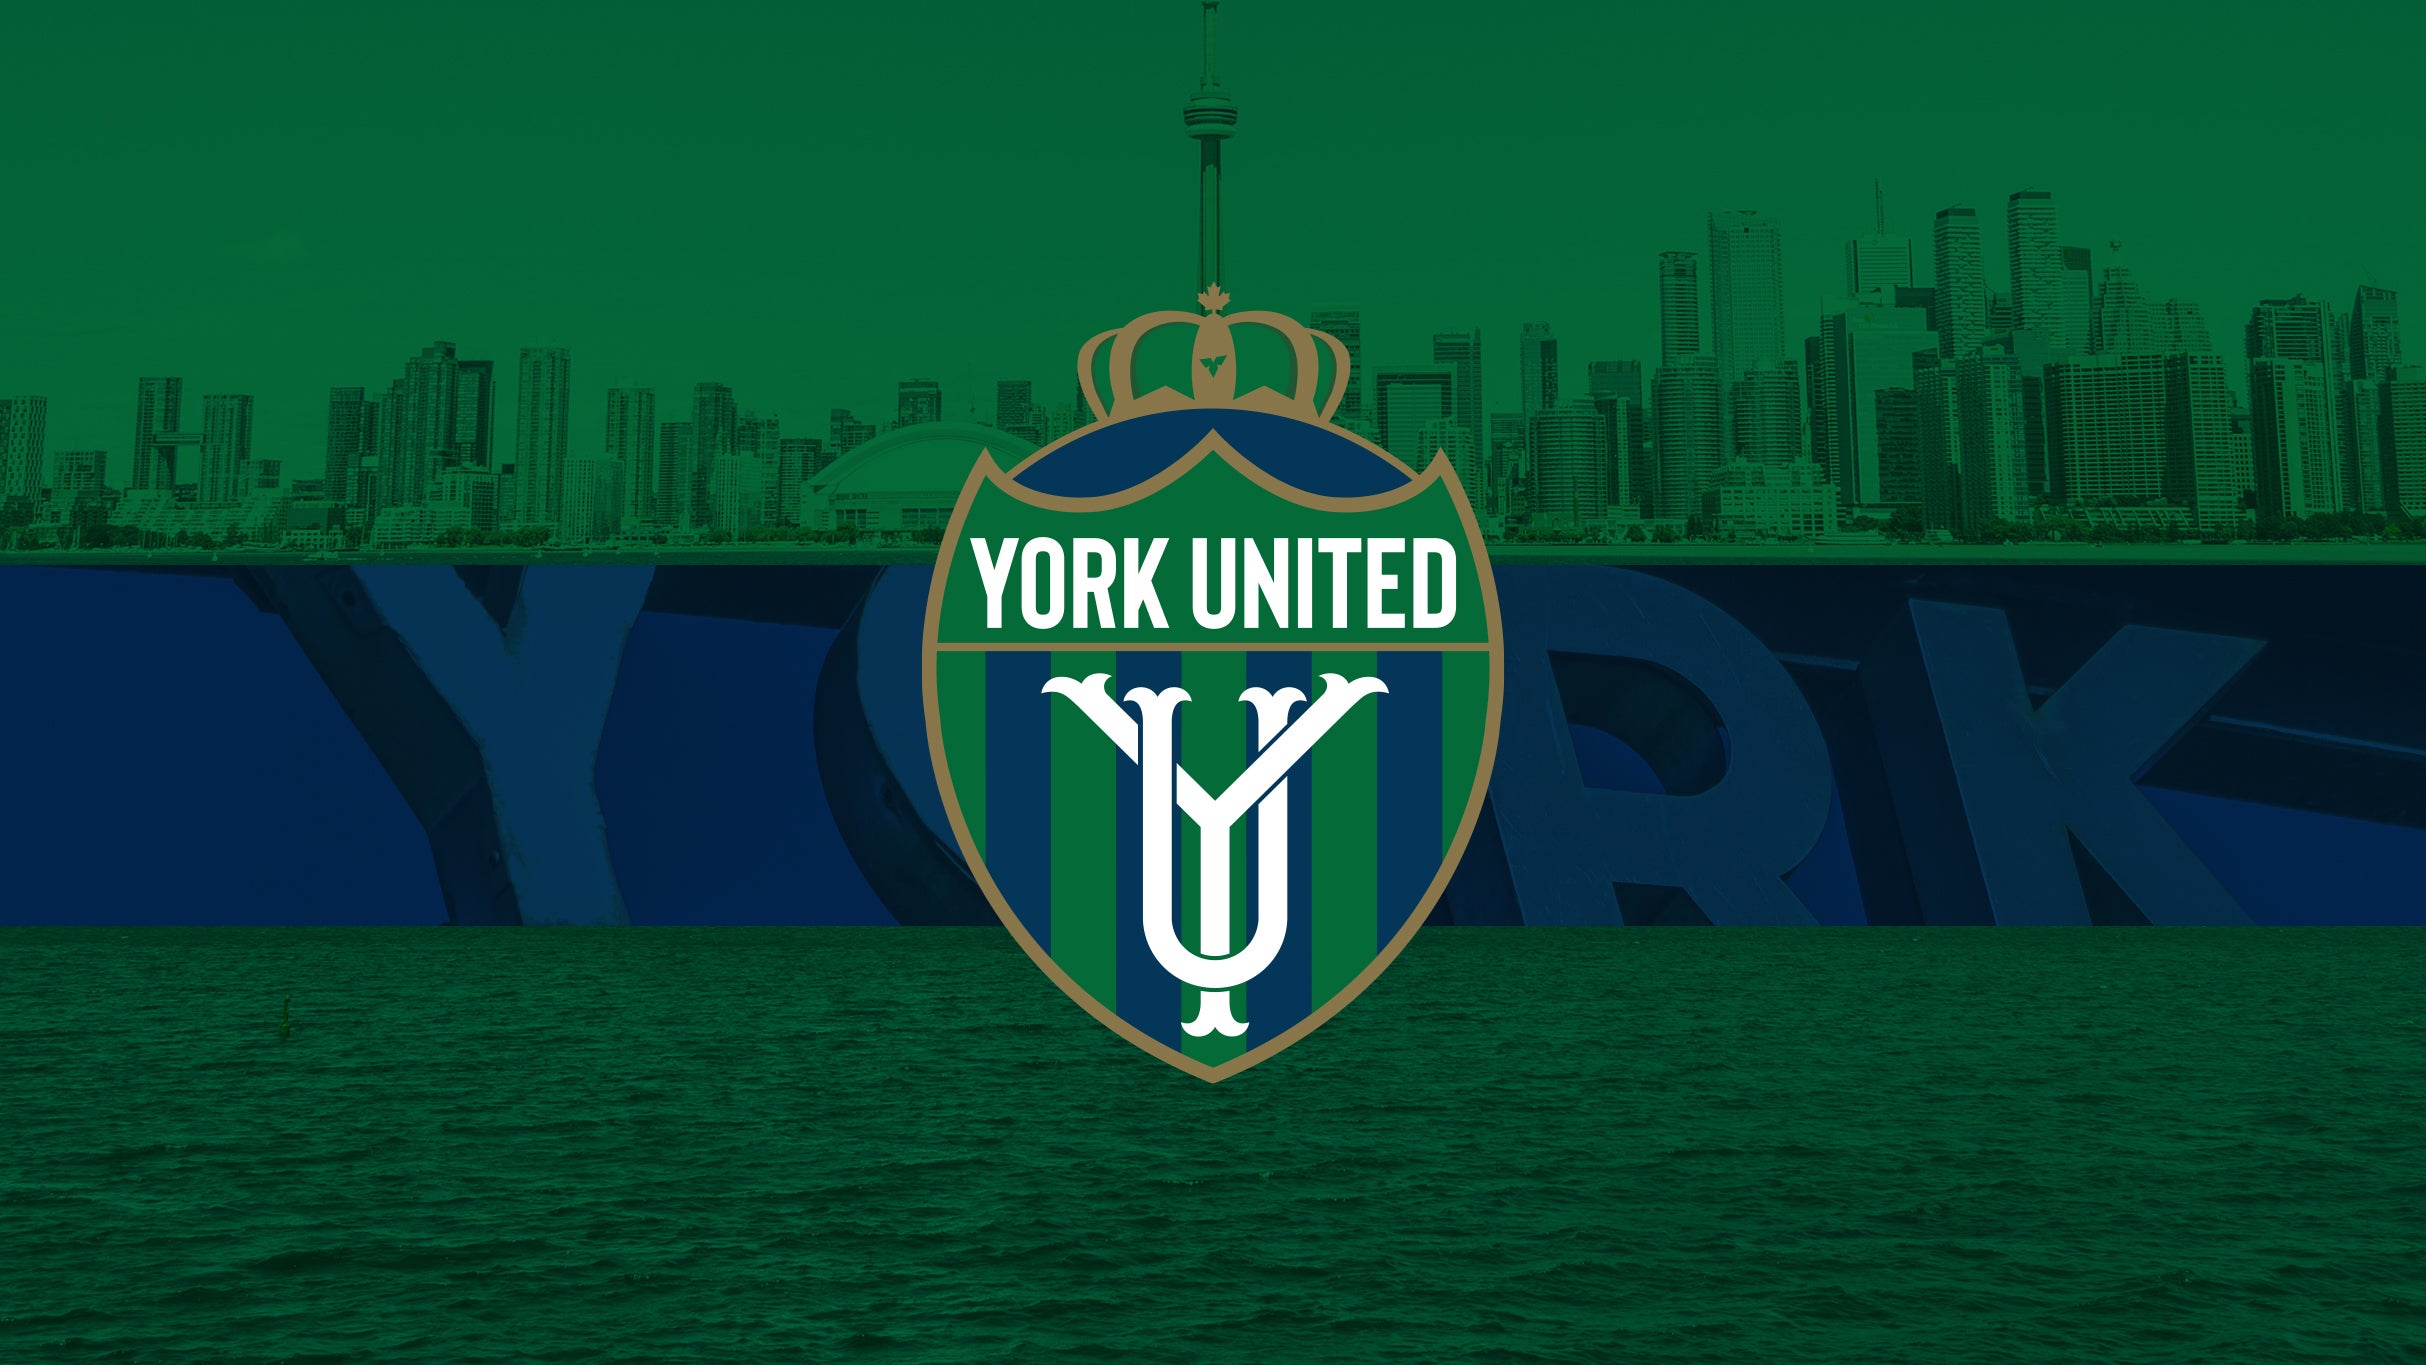 York United FC vs. Valour FC presales in Toronto